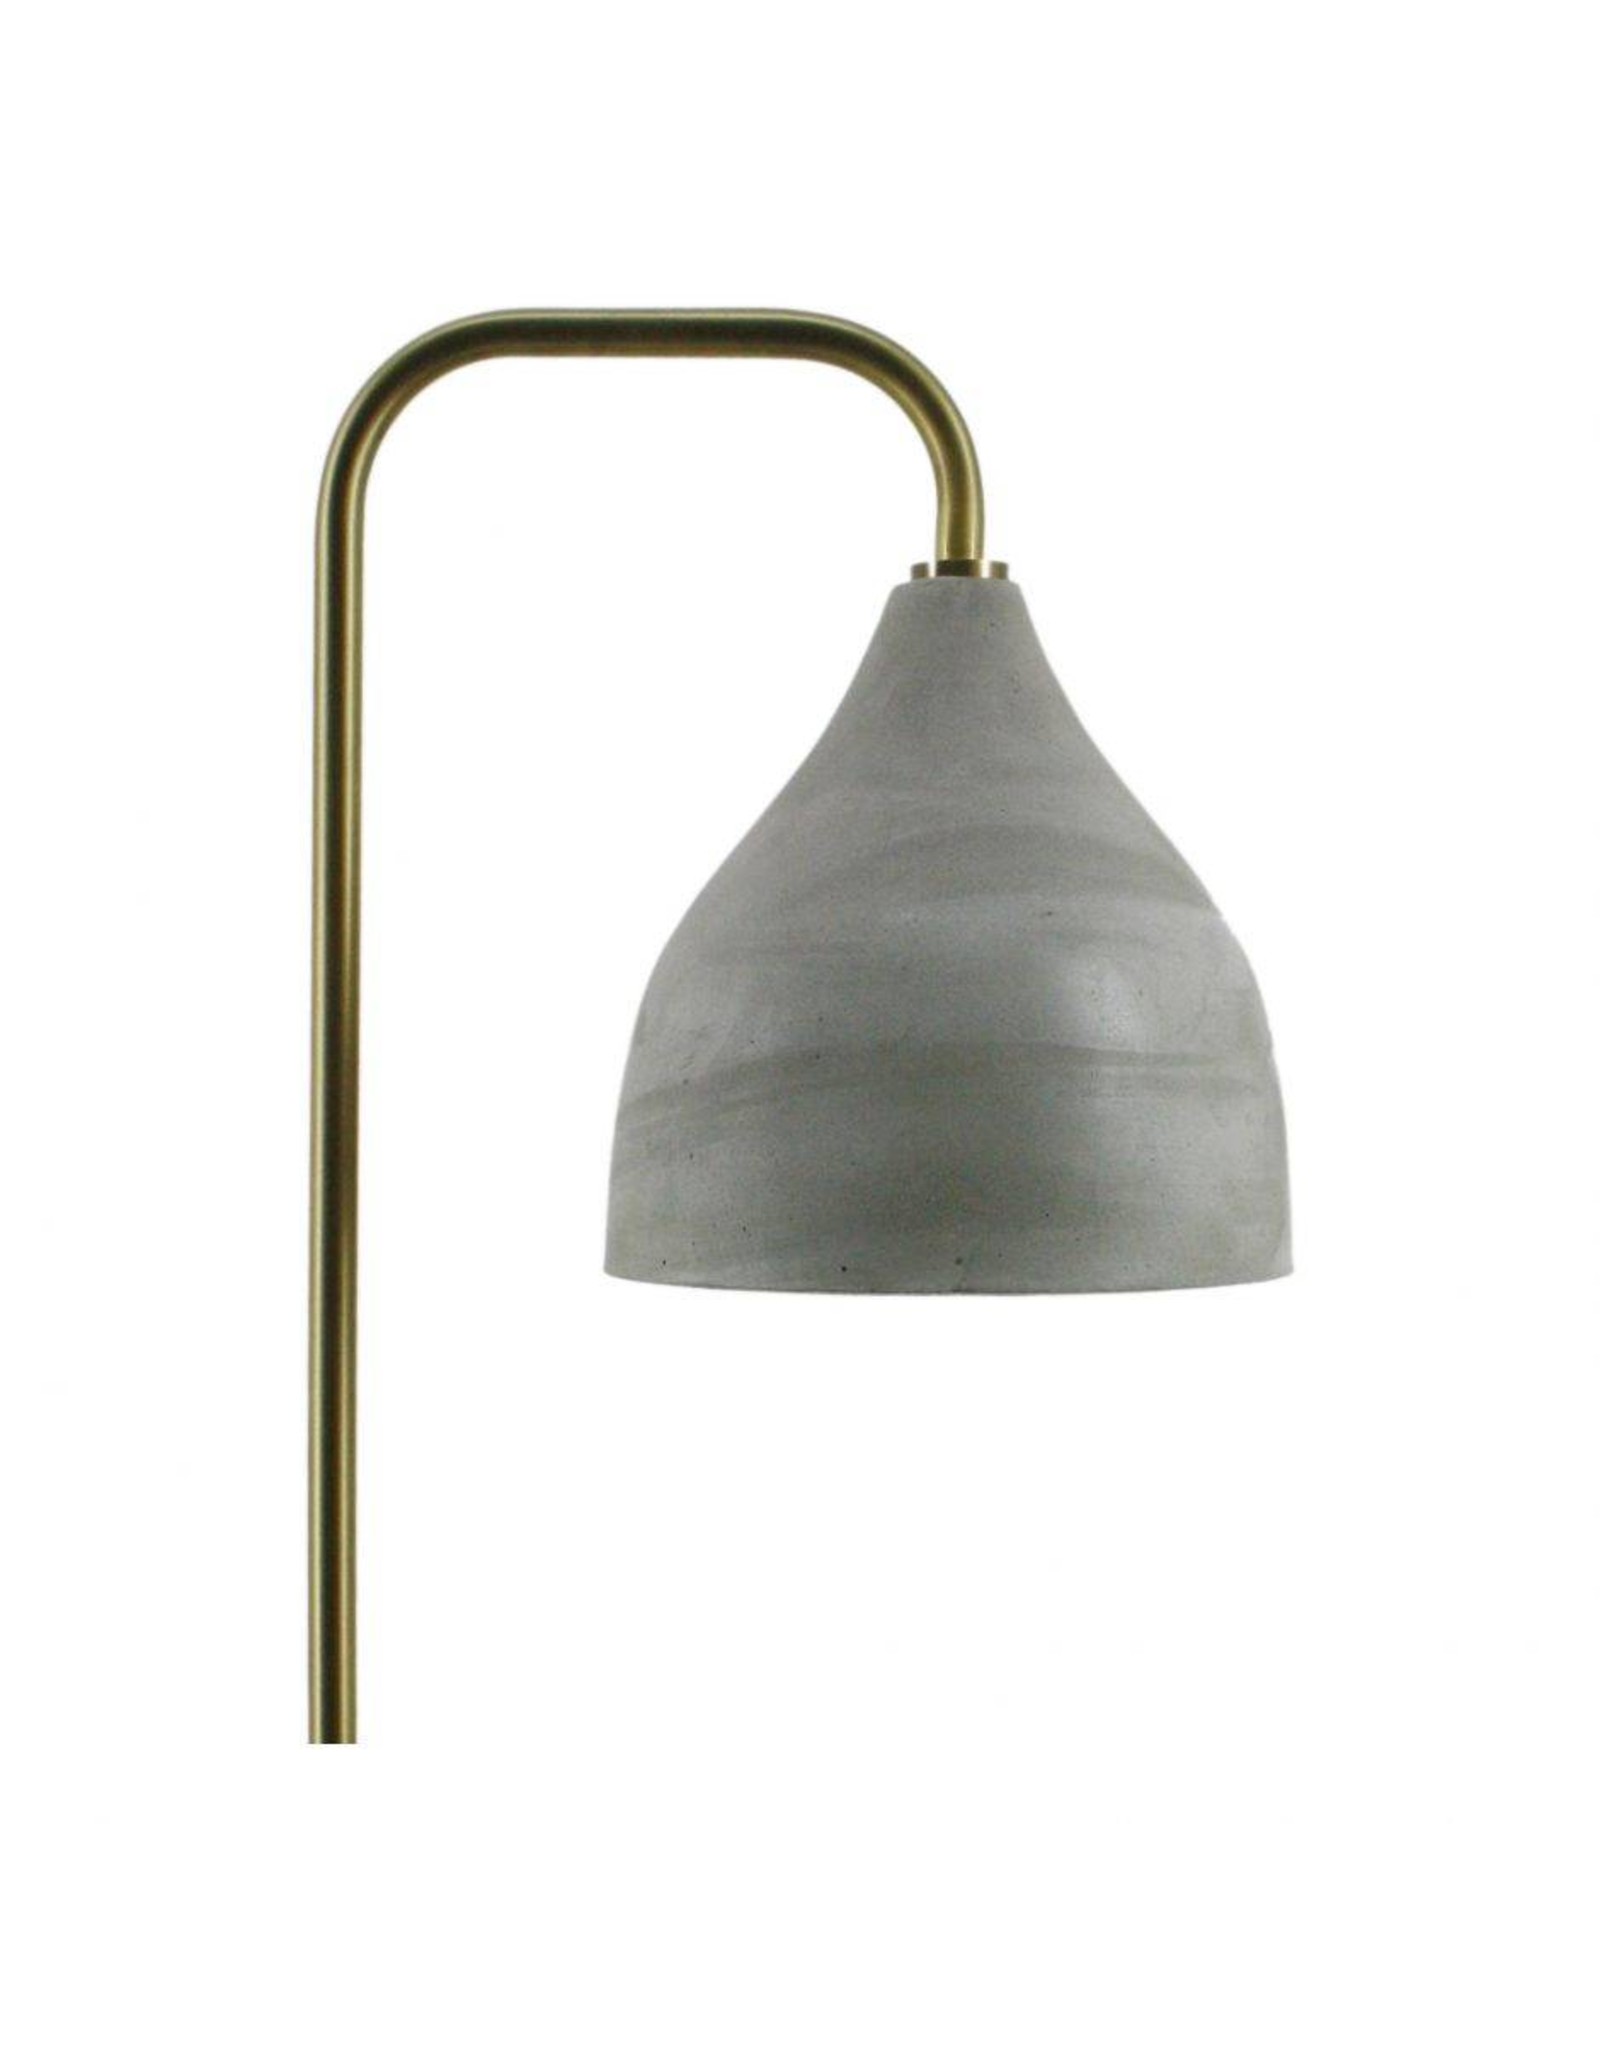 Monroe & Kent DELFT TABLE LAMP